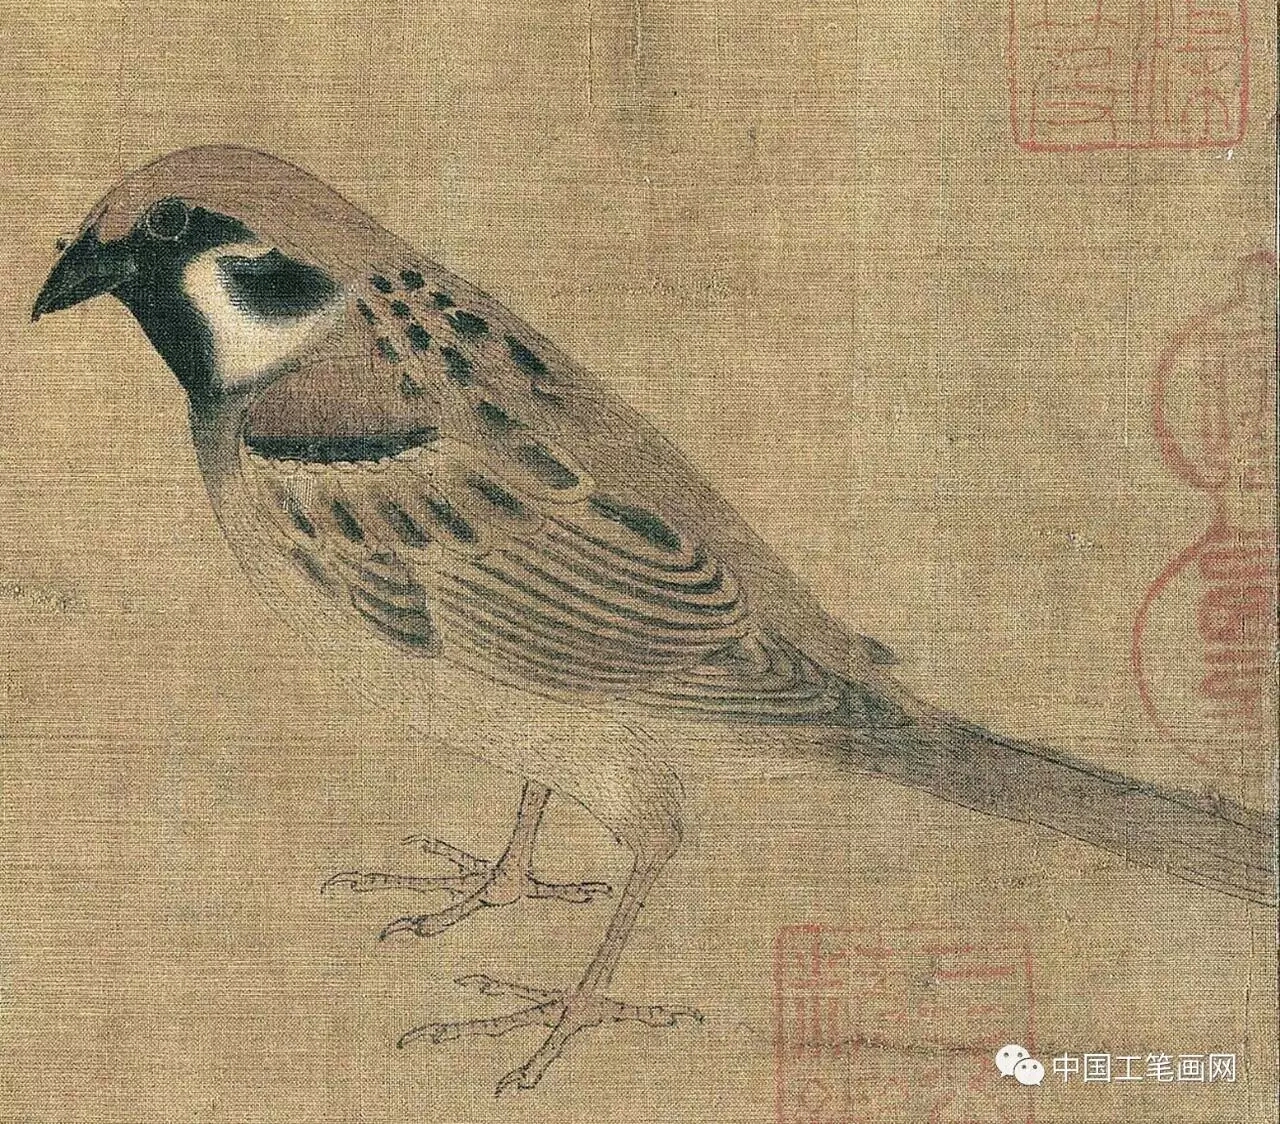 局部图《写生珍禽图》为五代西蜀画家黄筌的传世名作,图中描绘了鹡